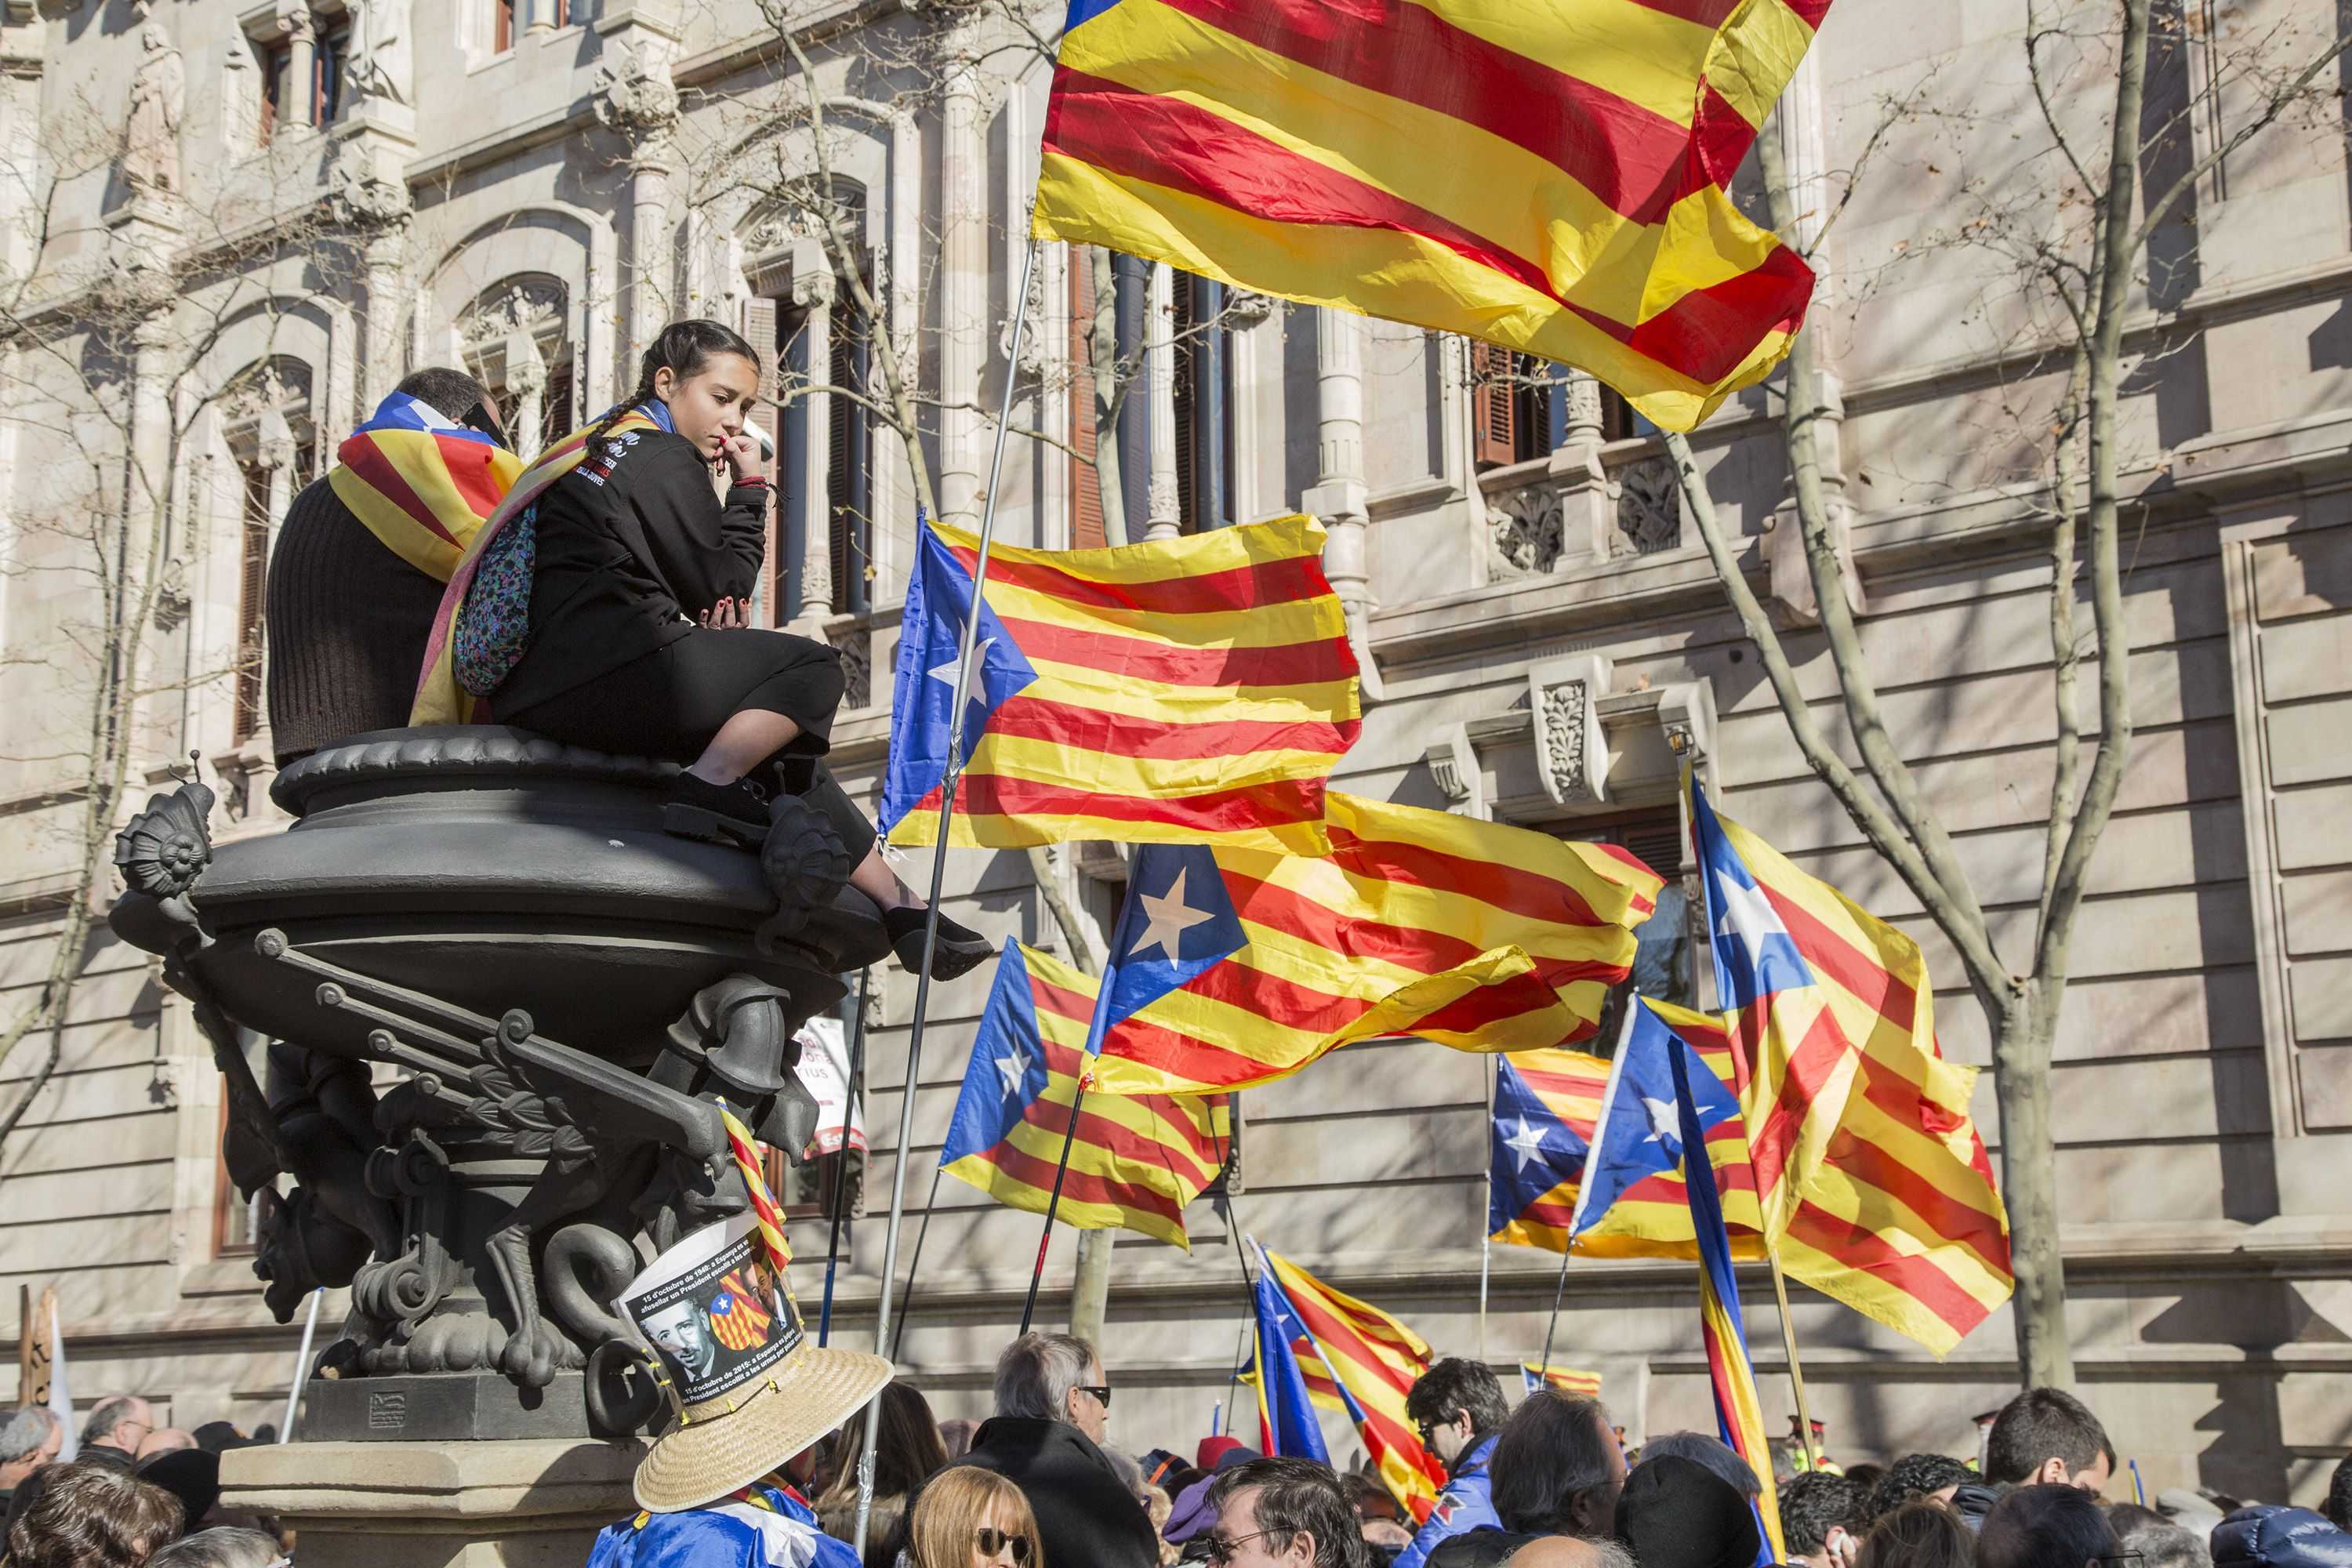 Quan juristes i experts espanyols (també) defensen el referèndum per a Catalunya